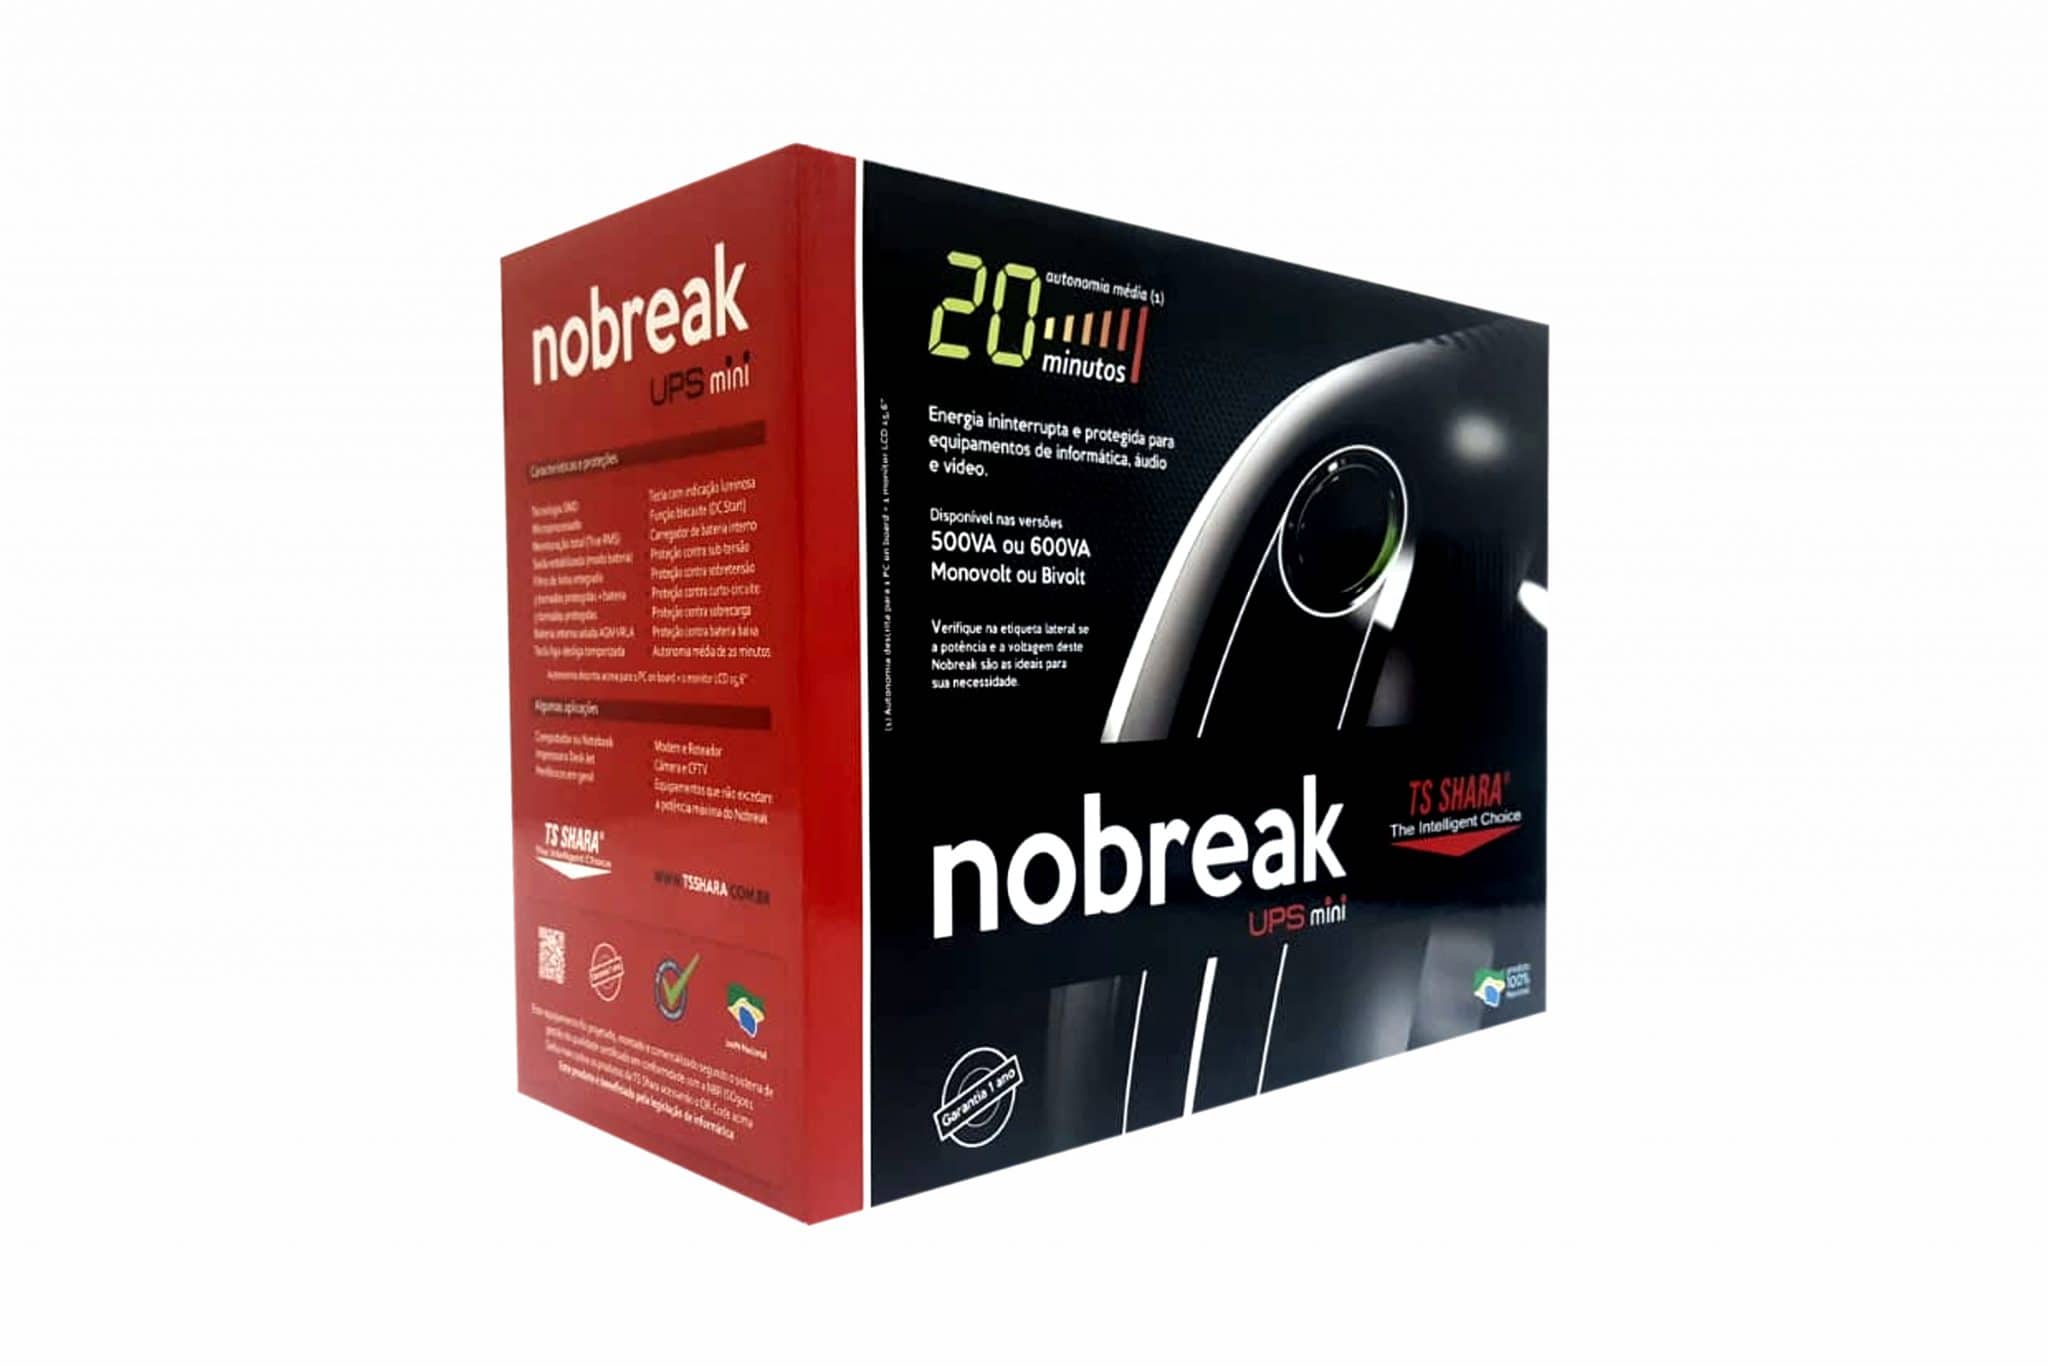 Nobreak TS Shara UPS Mini microprocessado da TS SHARA é a melhor relação custo benefício do mercado, pois renune tecnologia e preço competitivo.